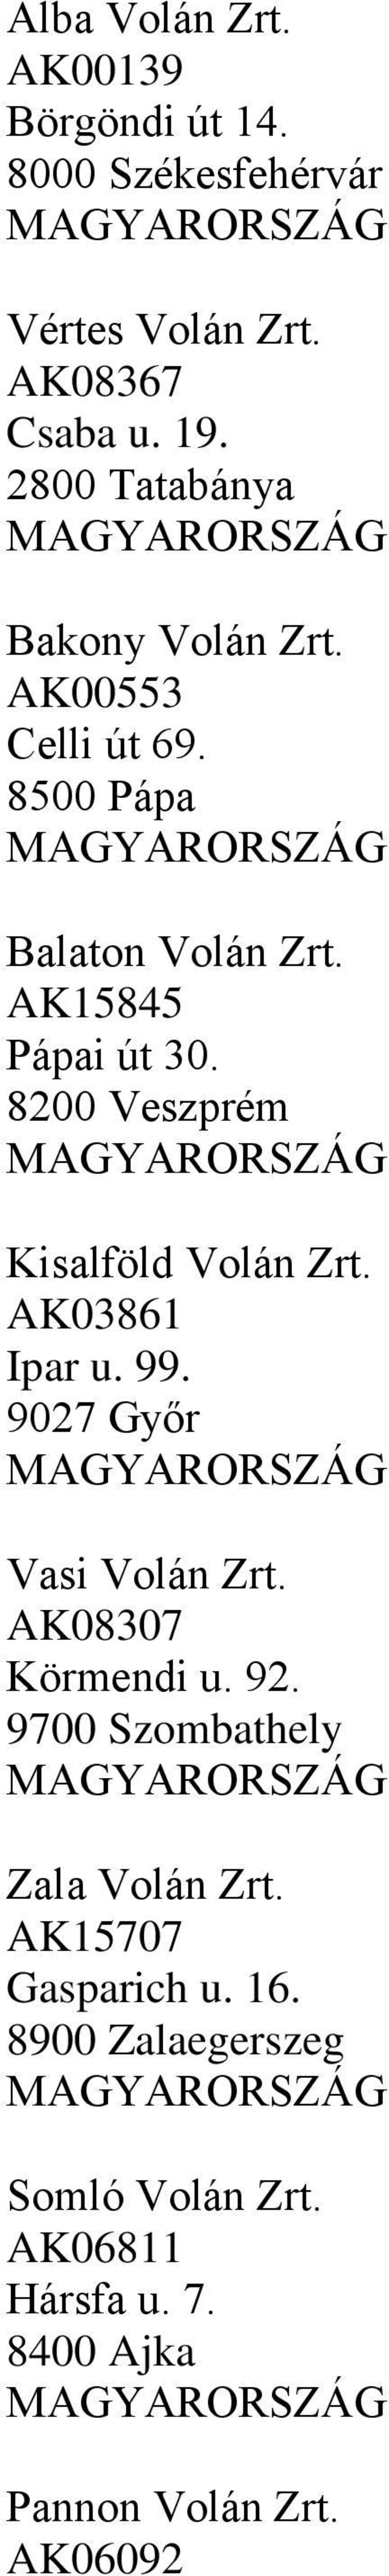 8200 Veszprém Kisalföld Volán Zrt. AK03861 Ipar u. 99. 9027 Győr Vasi Volán Zrt. AK08307 Körmendi u. 92.